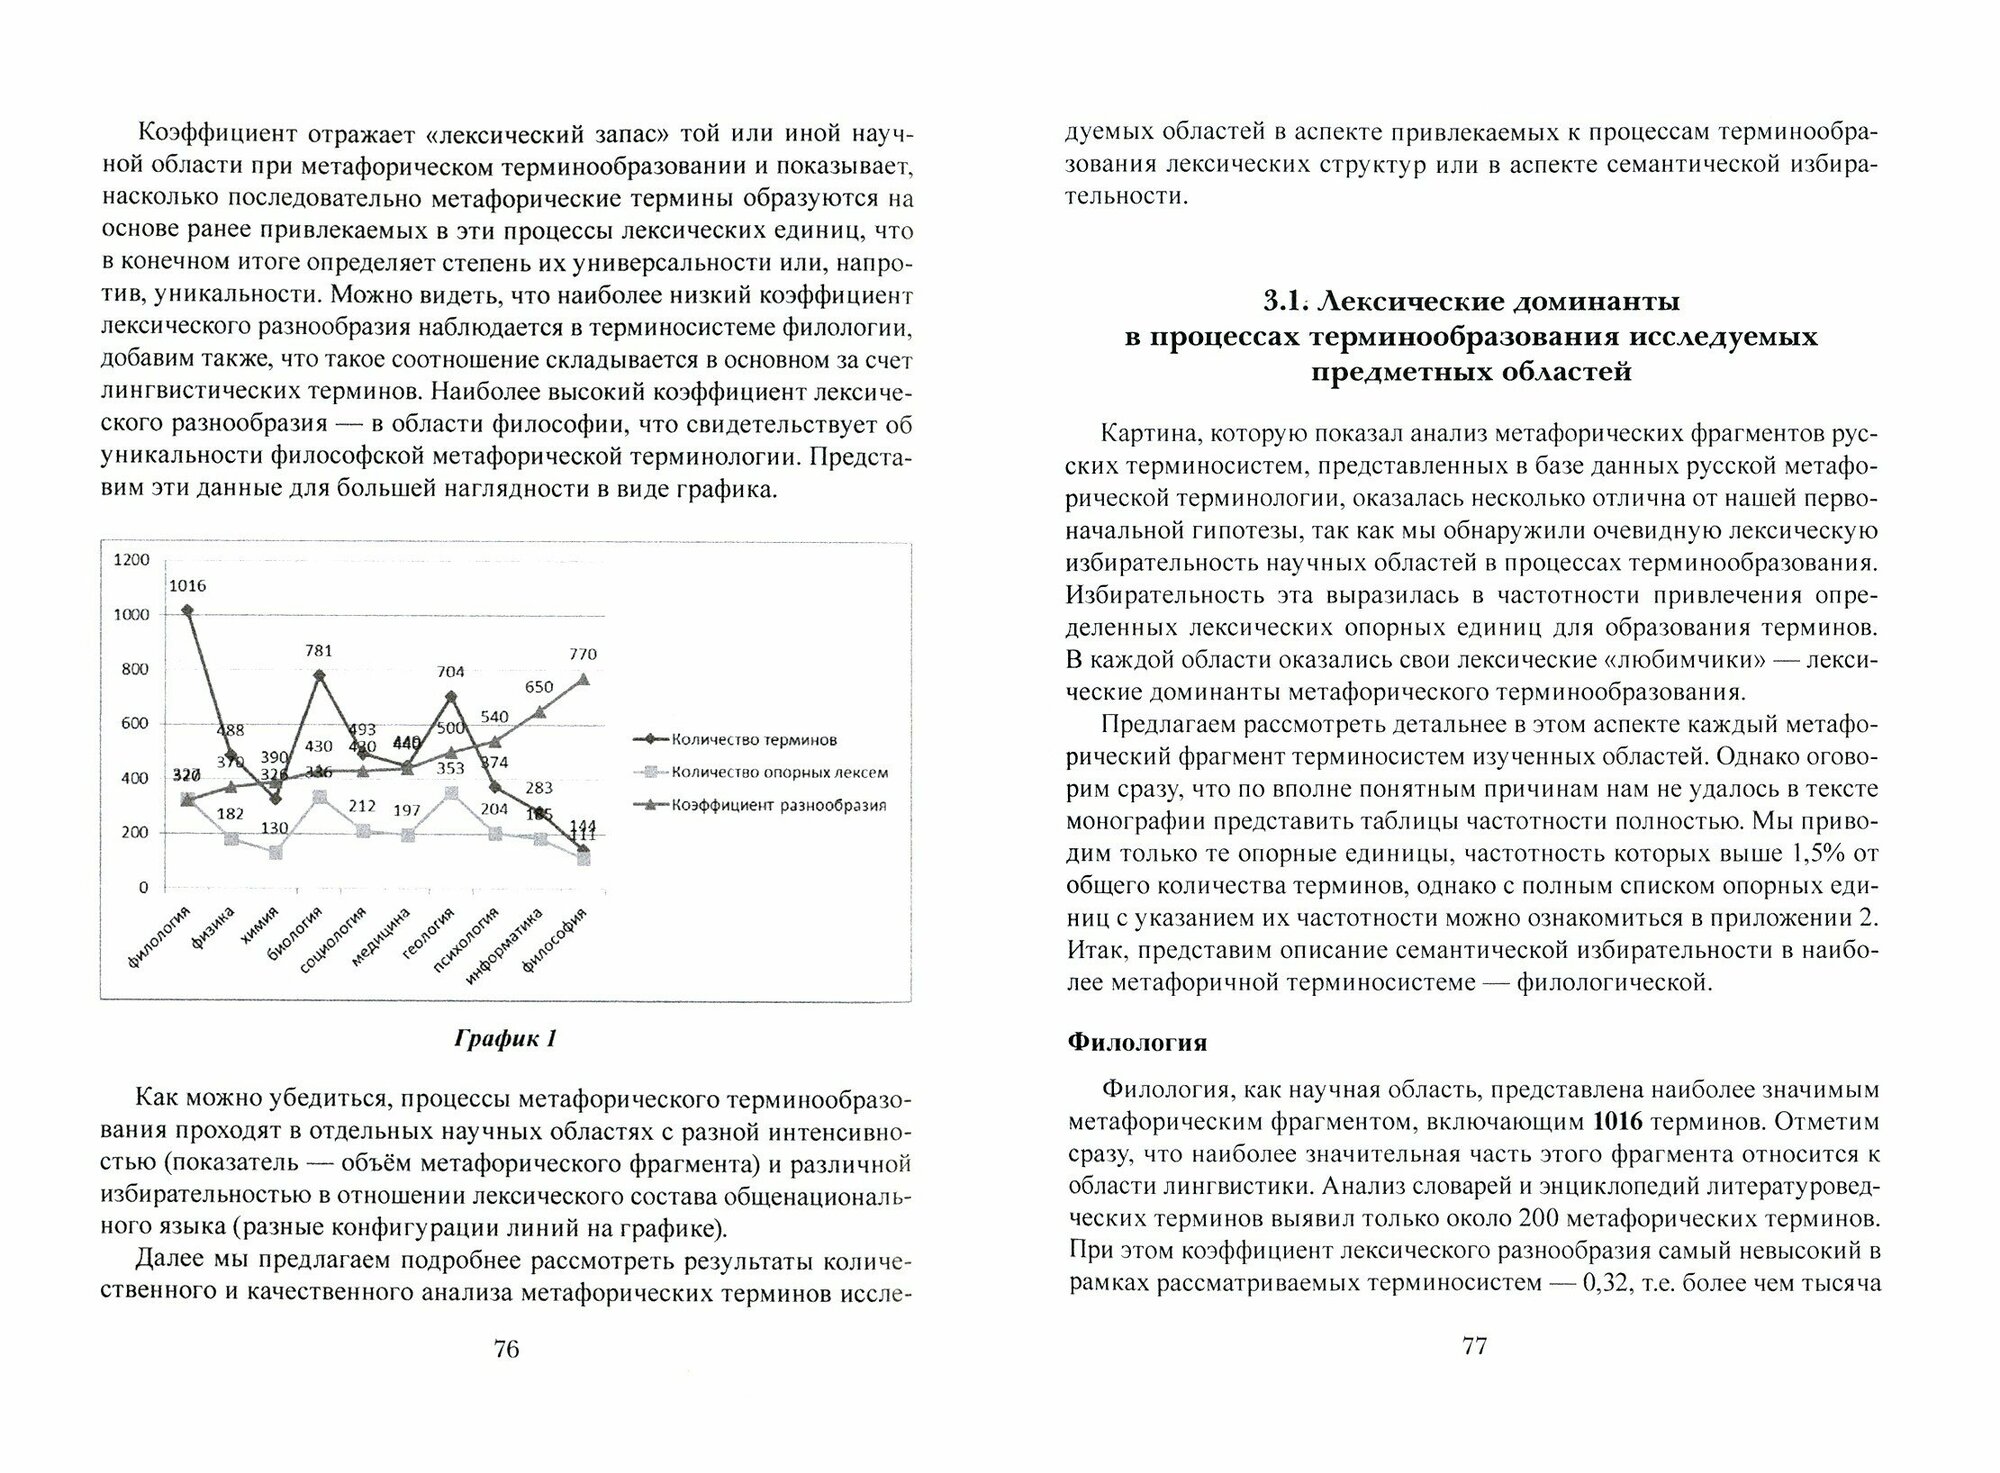 Русские терминосистемы в аспекте семантической - фото №3